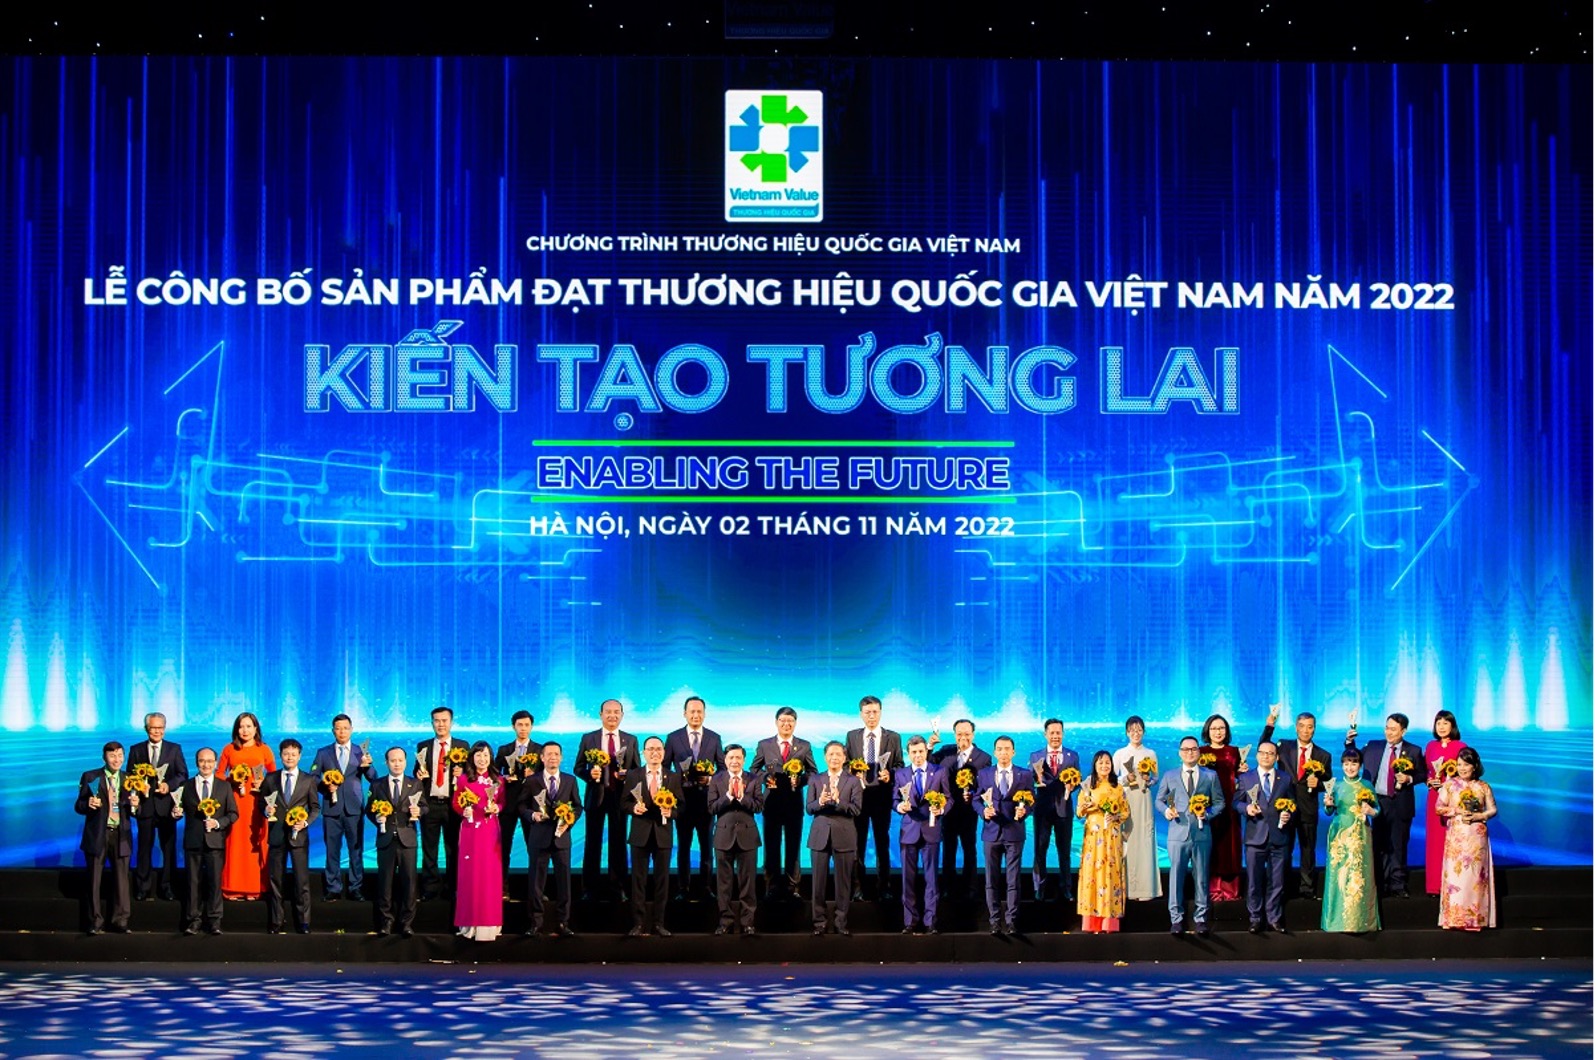 Tập đoàn DOJI 12 năm liên tiếp được công nhận thương hiệu quốc gia Việt Nam